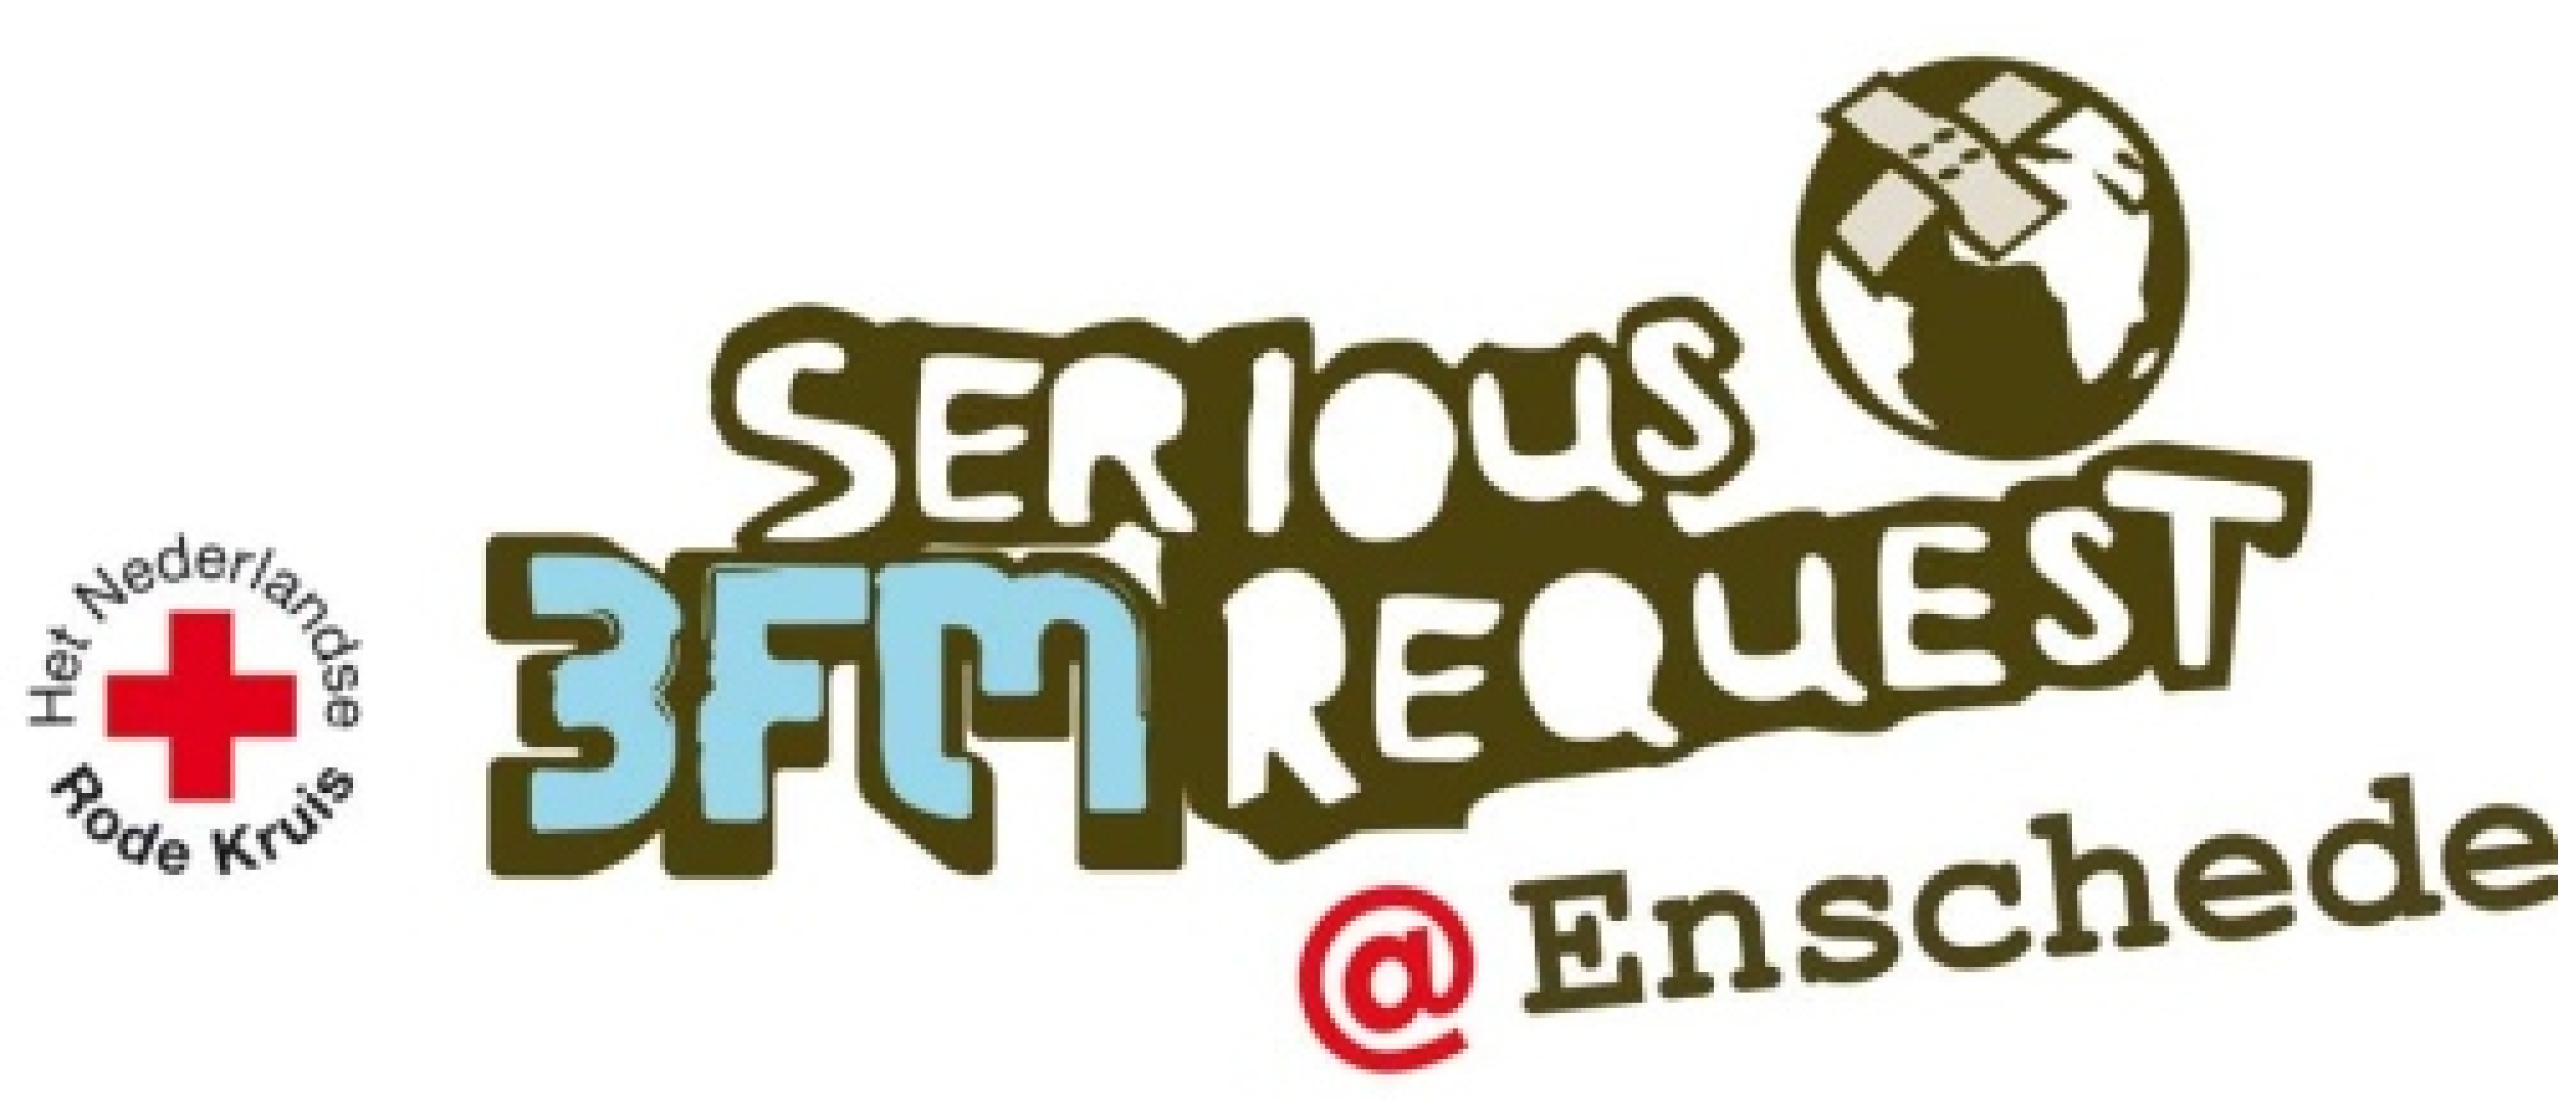 3FM Serious Request, totaalscores per dag